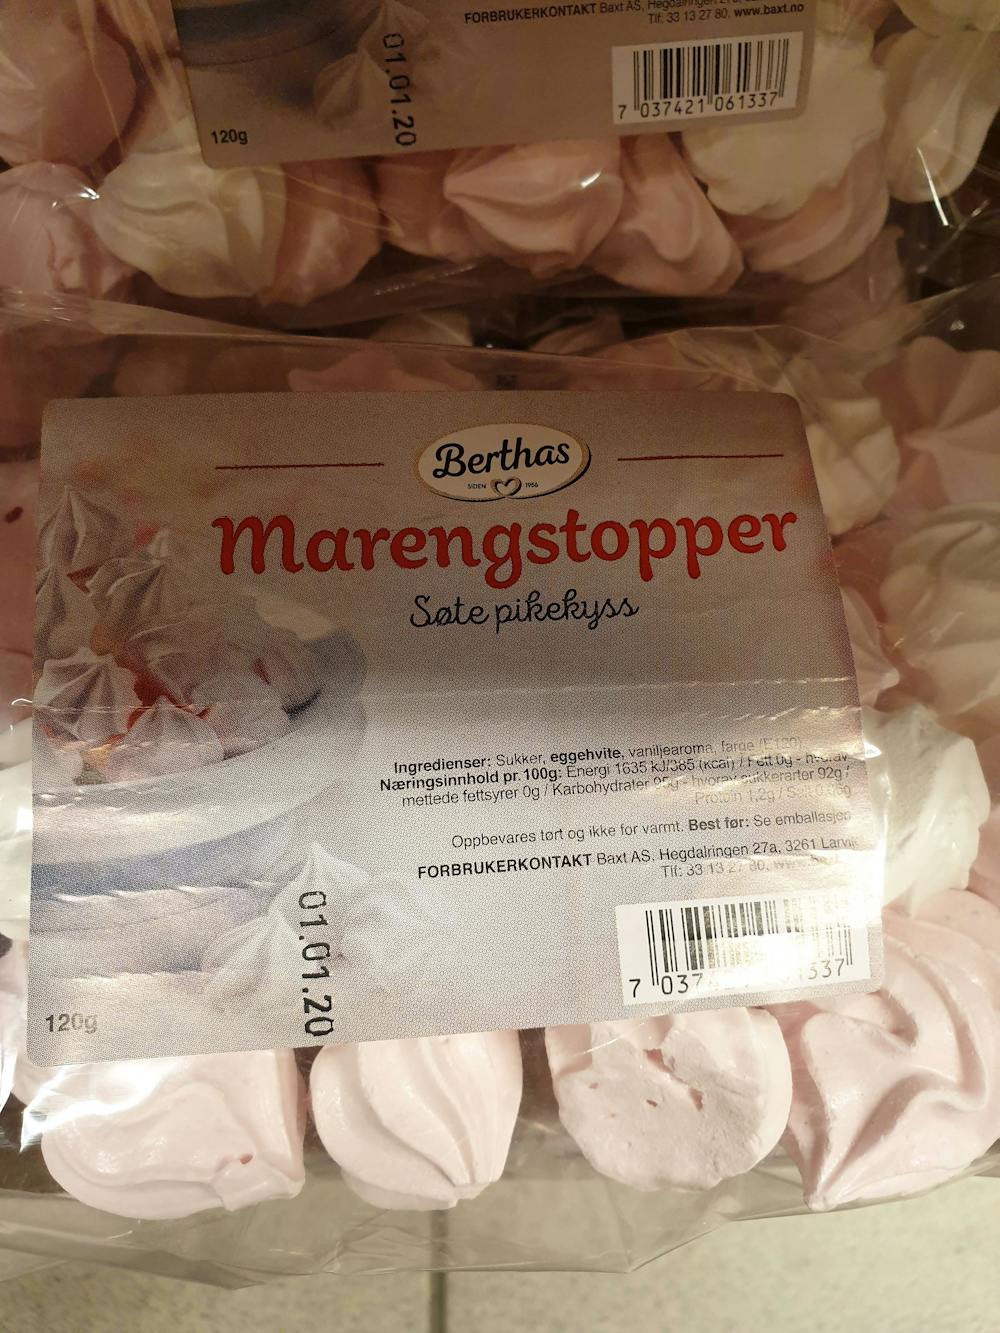 Marengstopper, Berthas